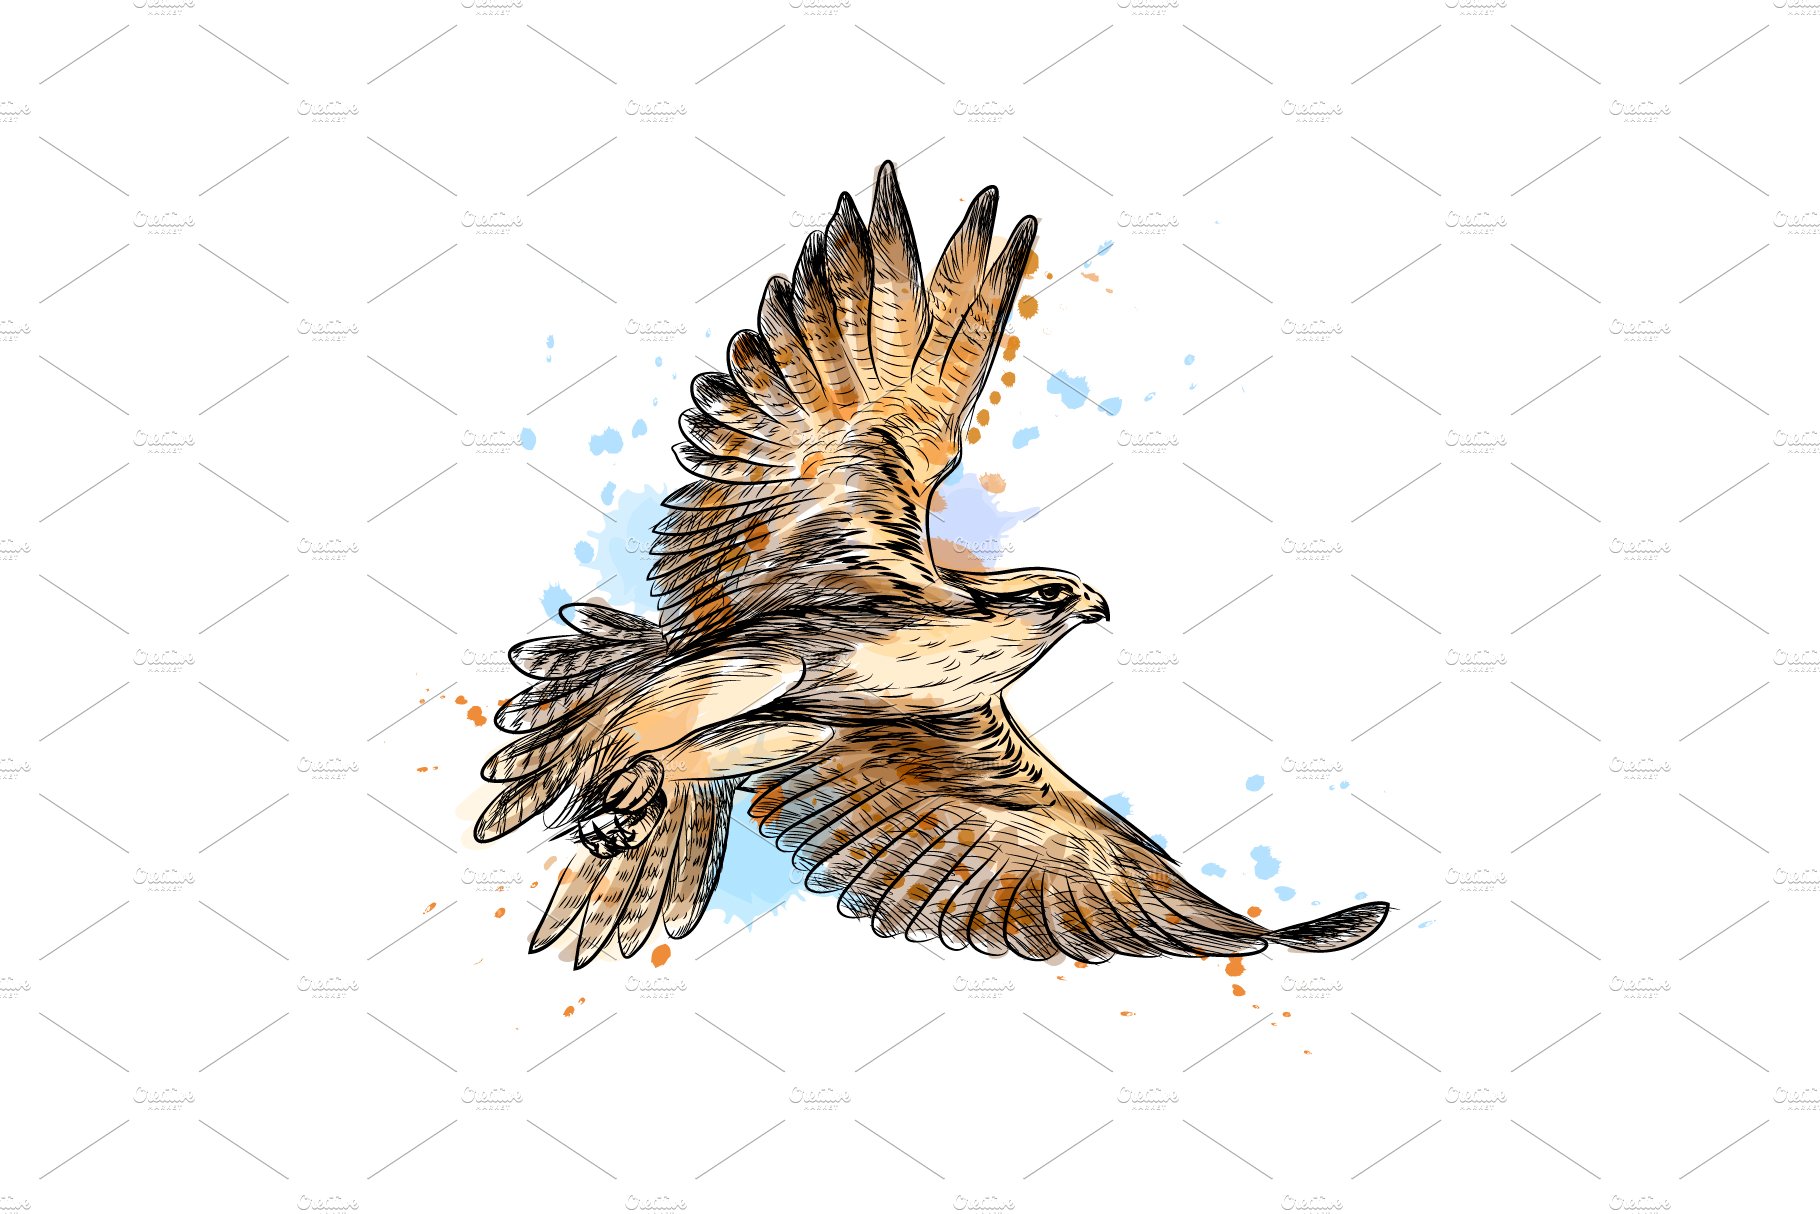 Falcon in flight cover image.